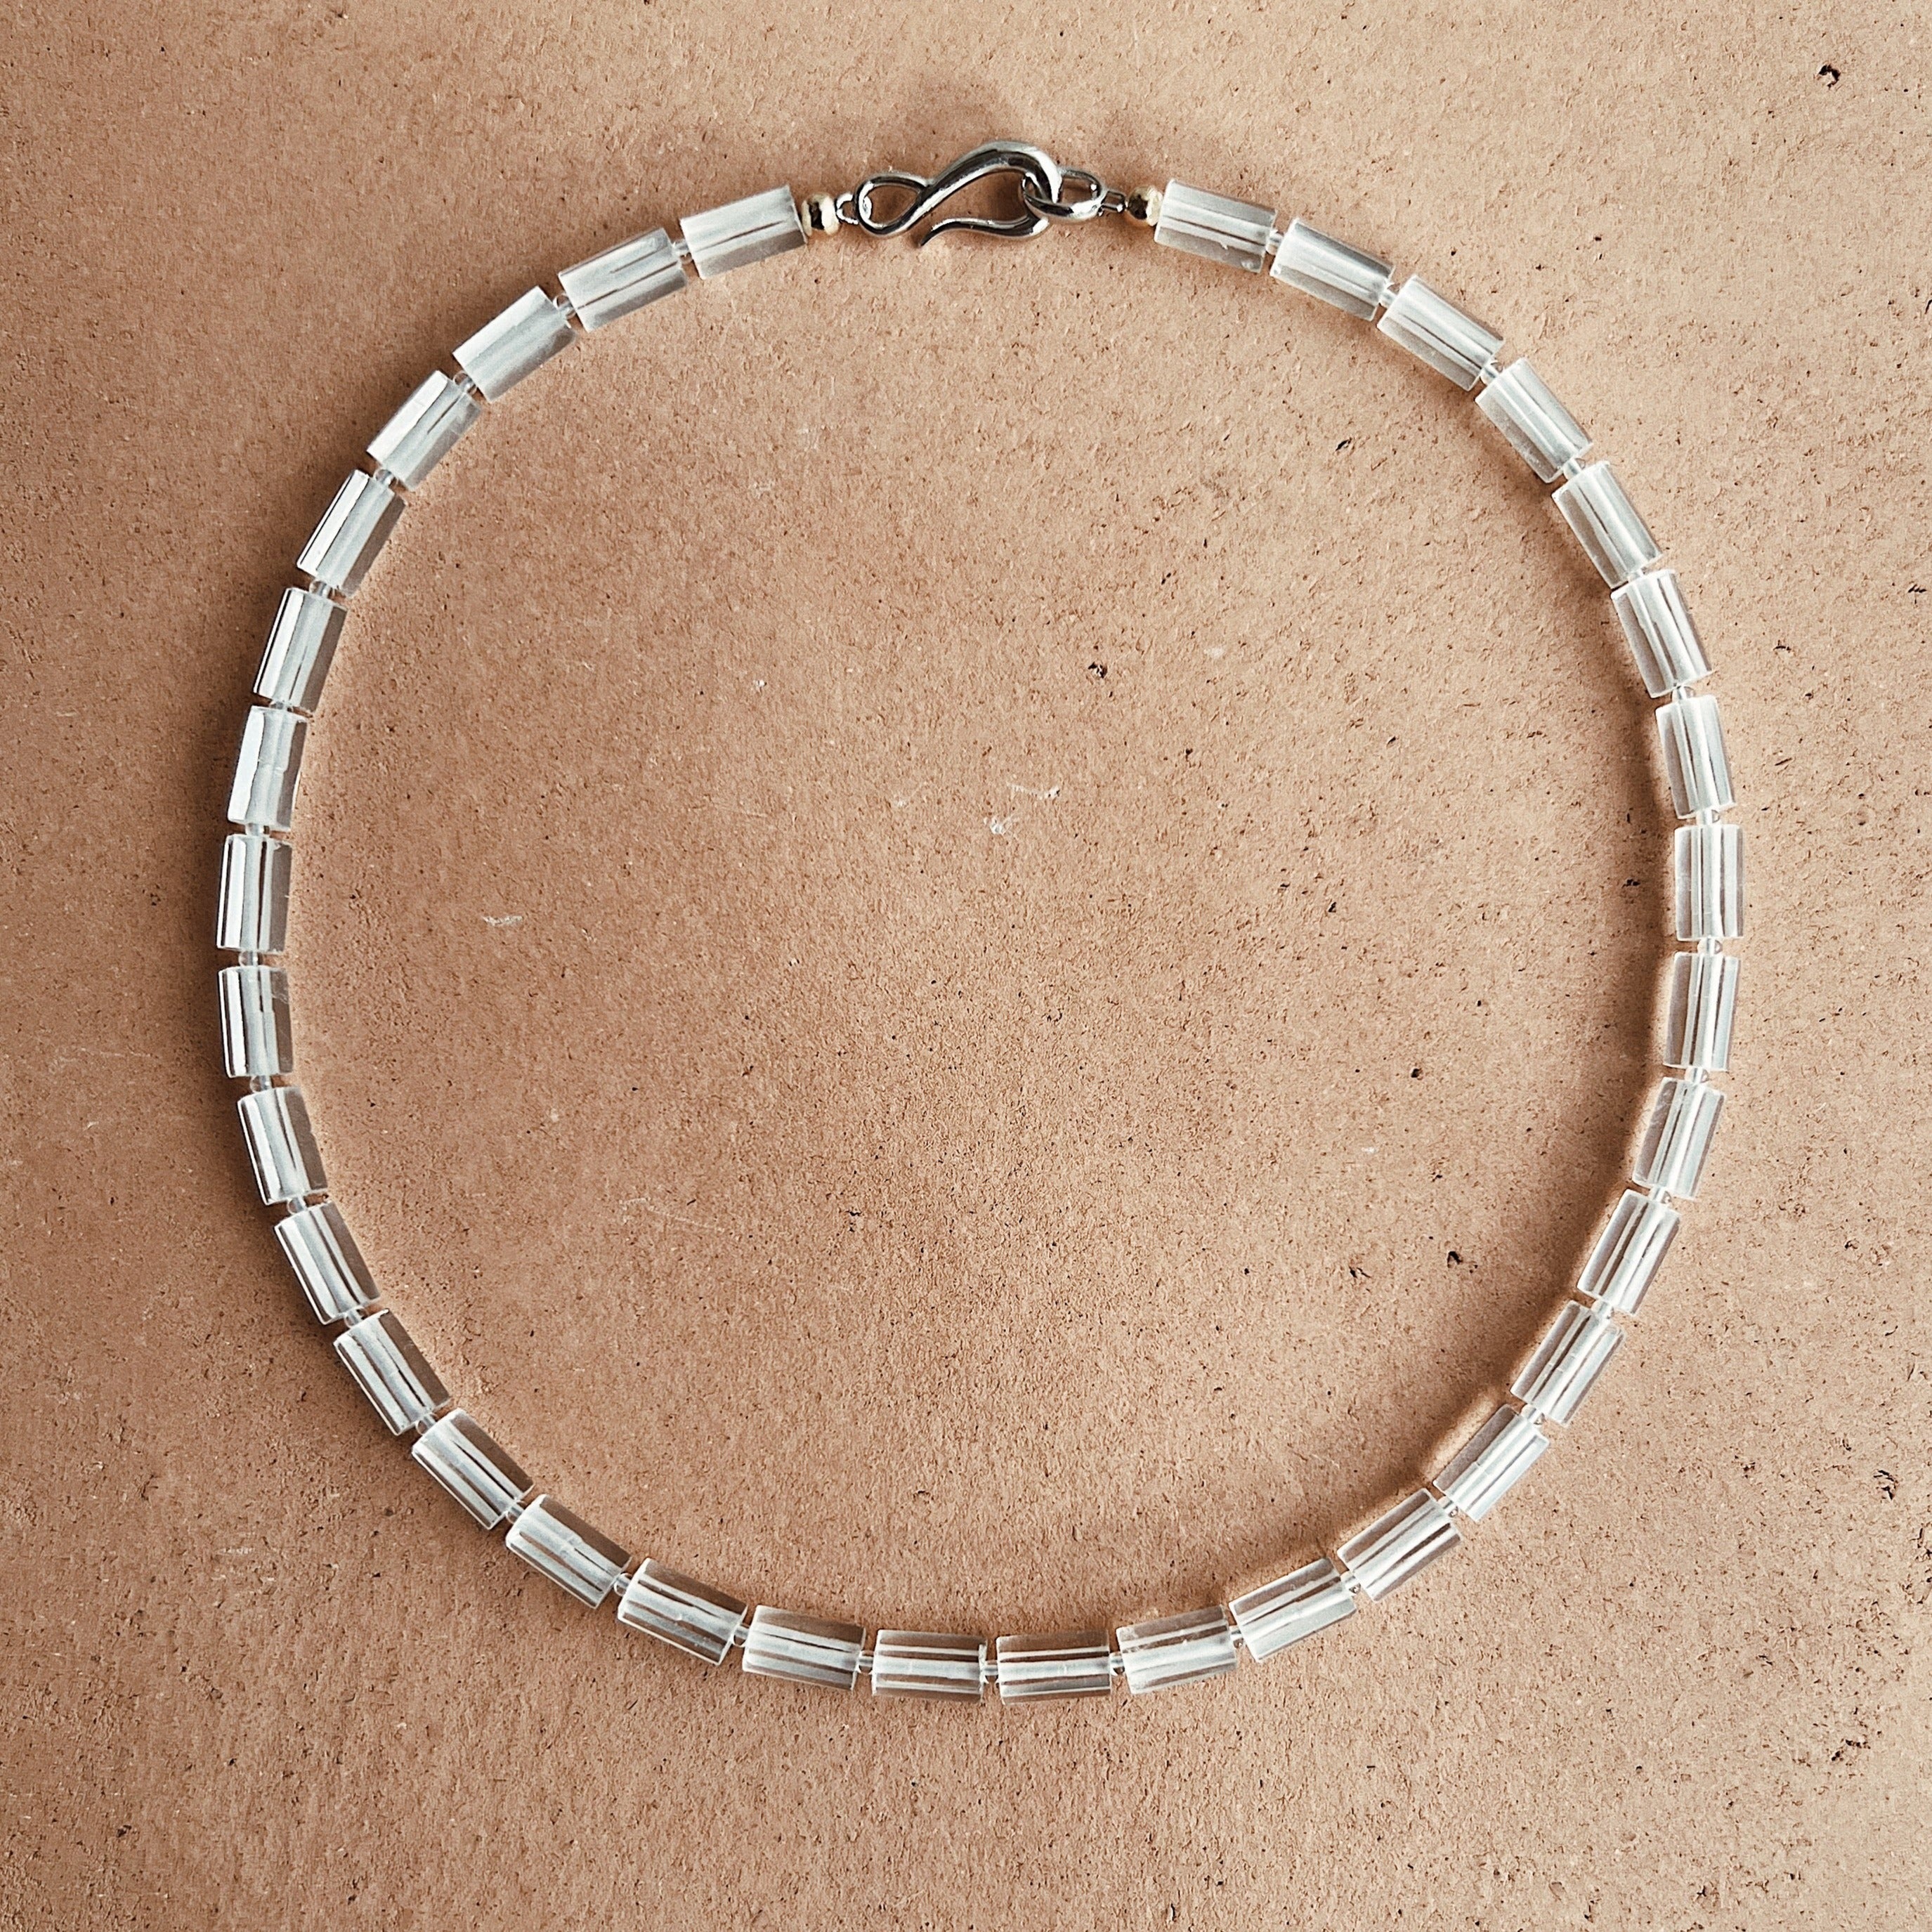 Pillar quartz collar necklace